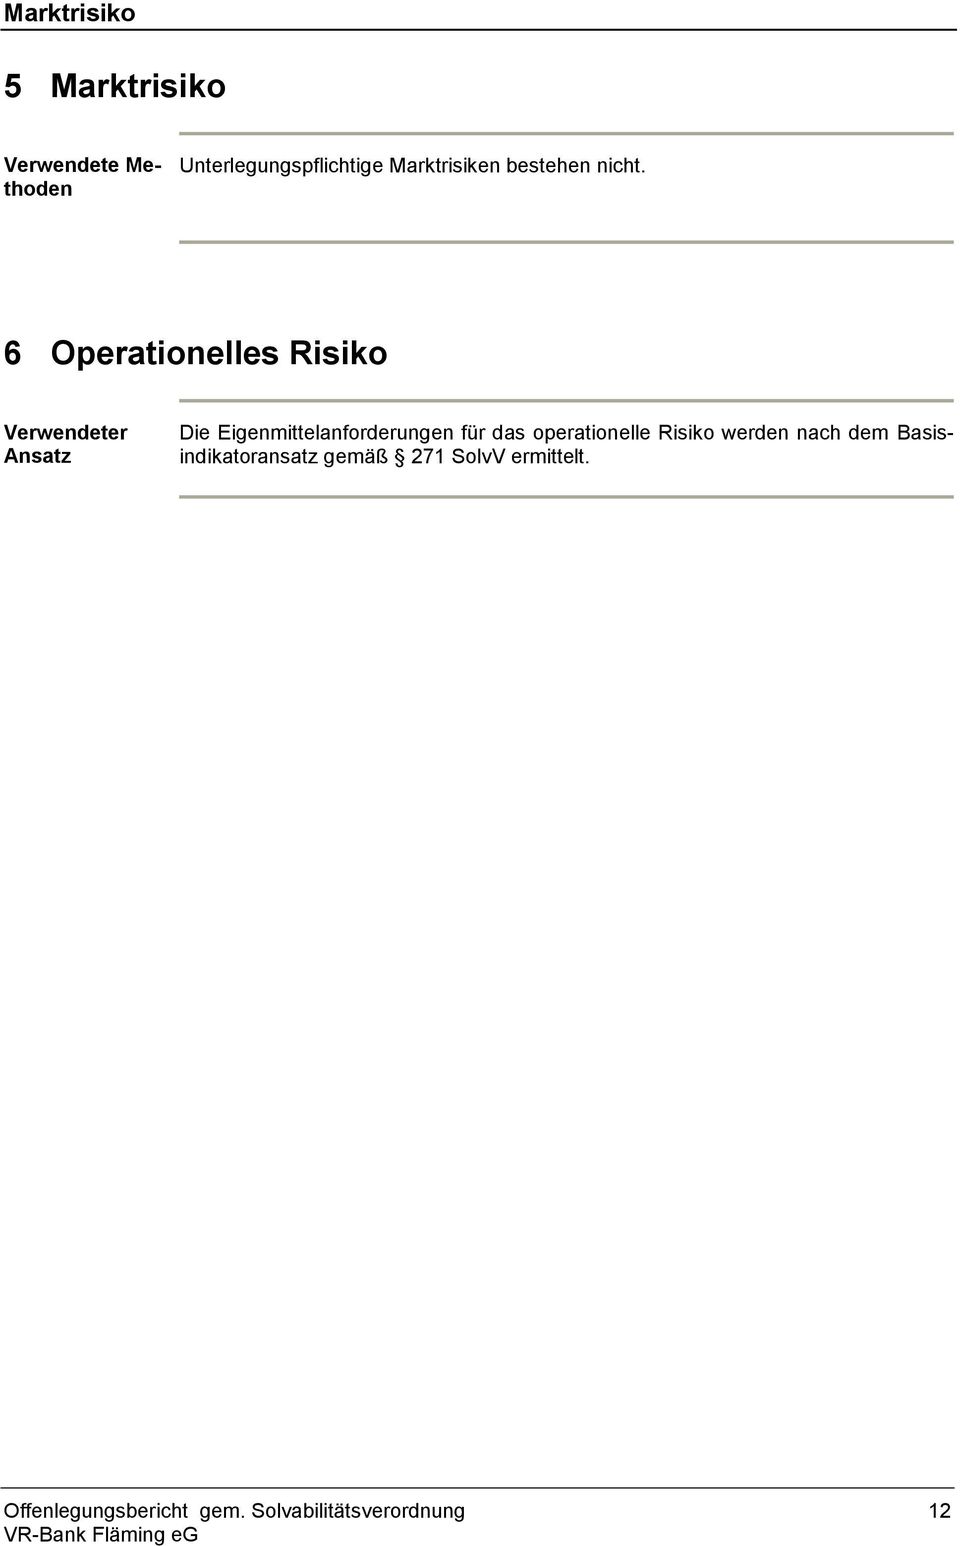 6 Operationelles Risiko Verwendeter Ansatz Die Eigenmittelanforderungen für